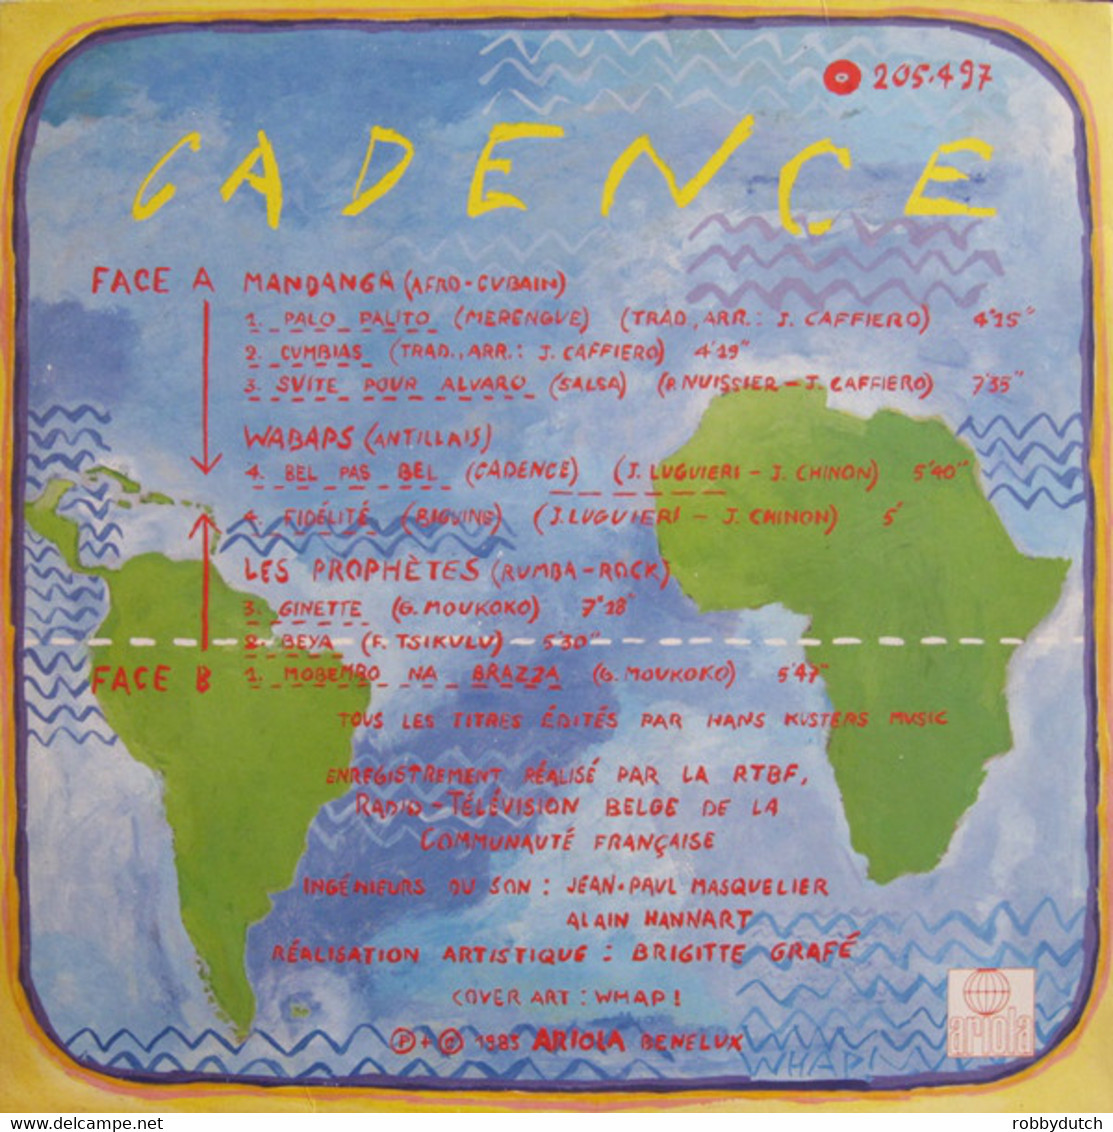 * LP * CADENCE - VARIOUS ARTISTS (Holland 1983 EX!!) - Wereldmuziek